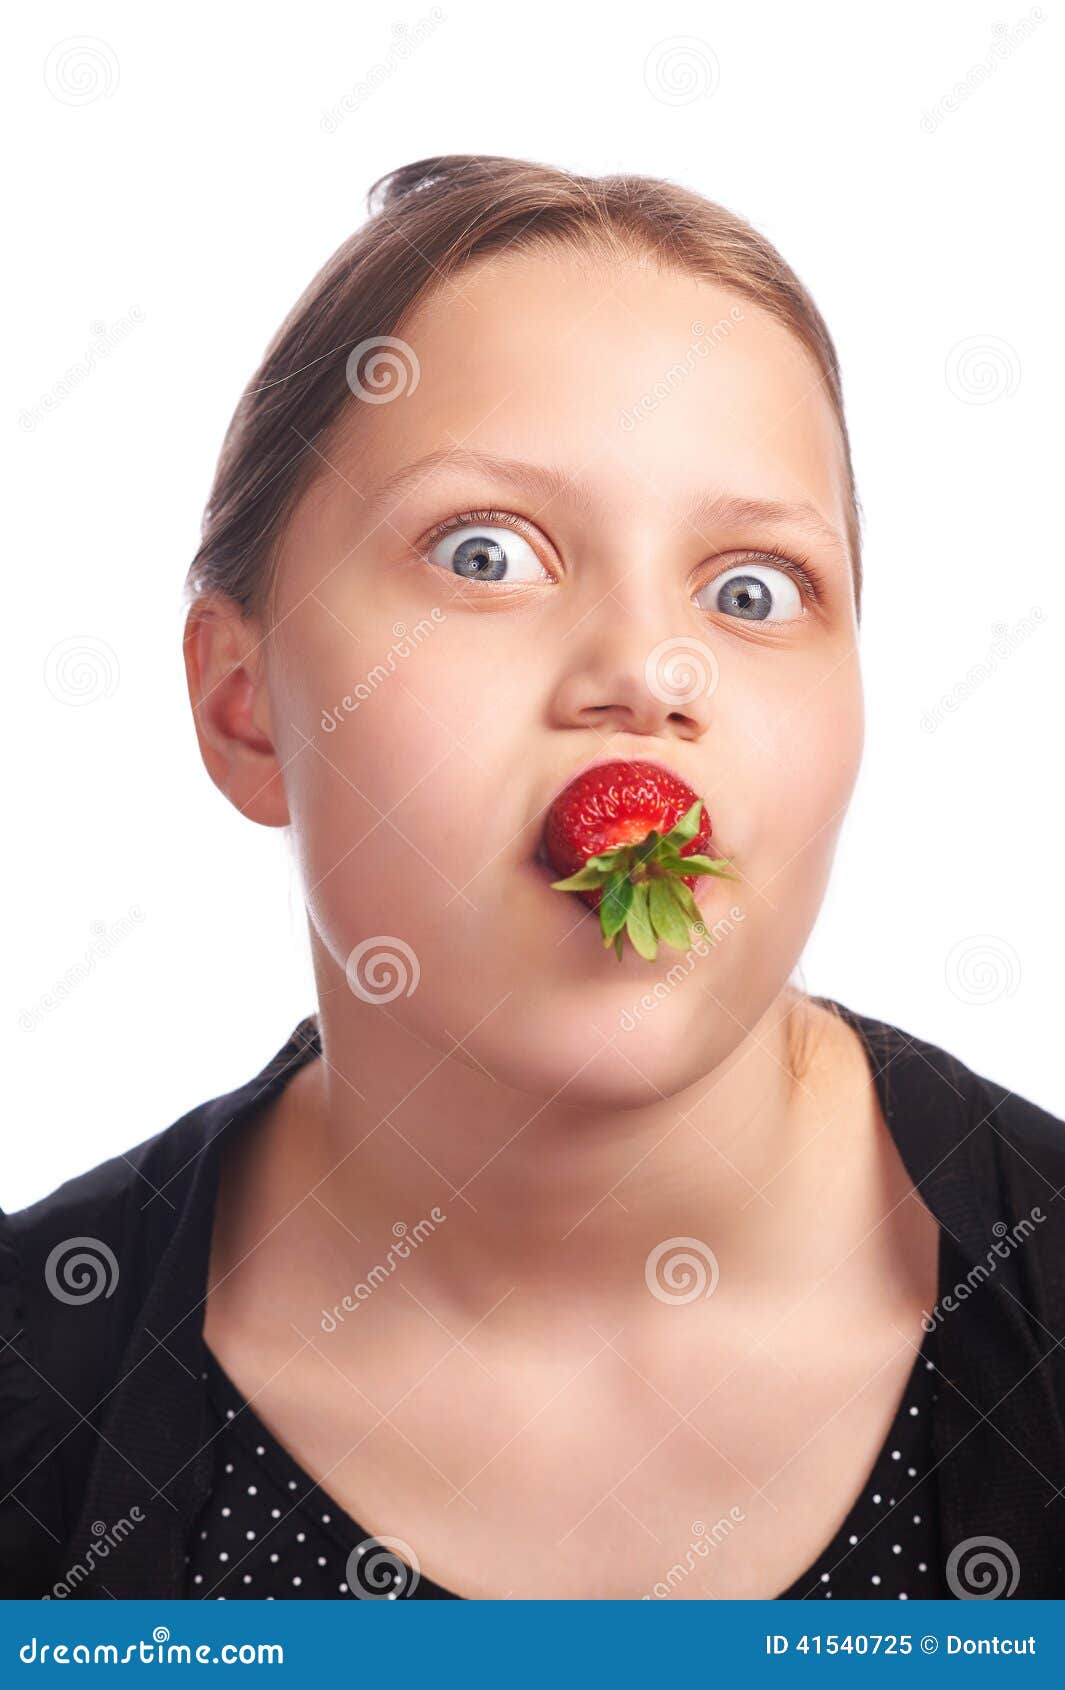 小孩子吃开胃草莓 库存照片. 图片 包括有 吃饭, 维生素, 甜甜, 他的, 草莓, 附属程序, 小孩, 手指 - 57794934